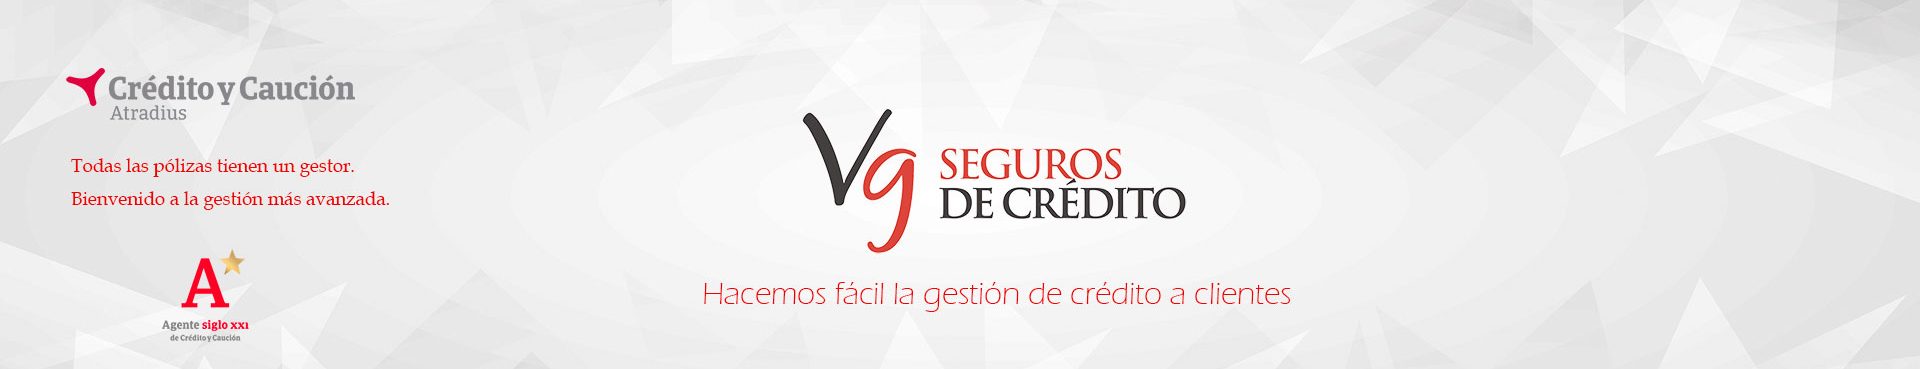 Seguros de crédito VG